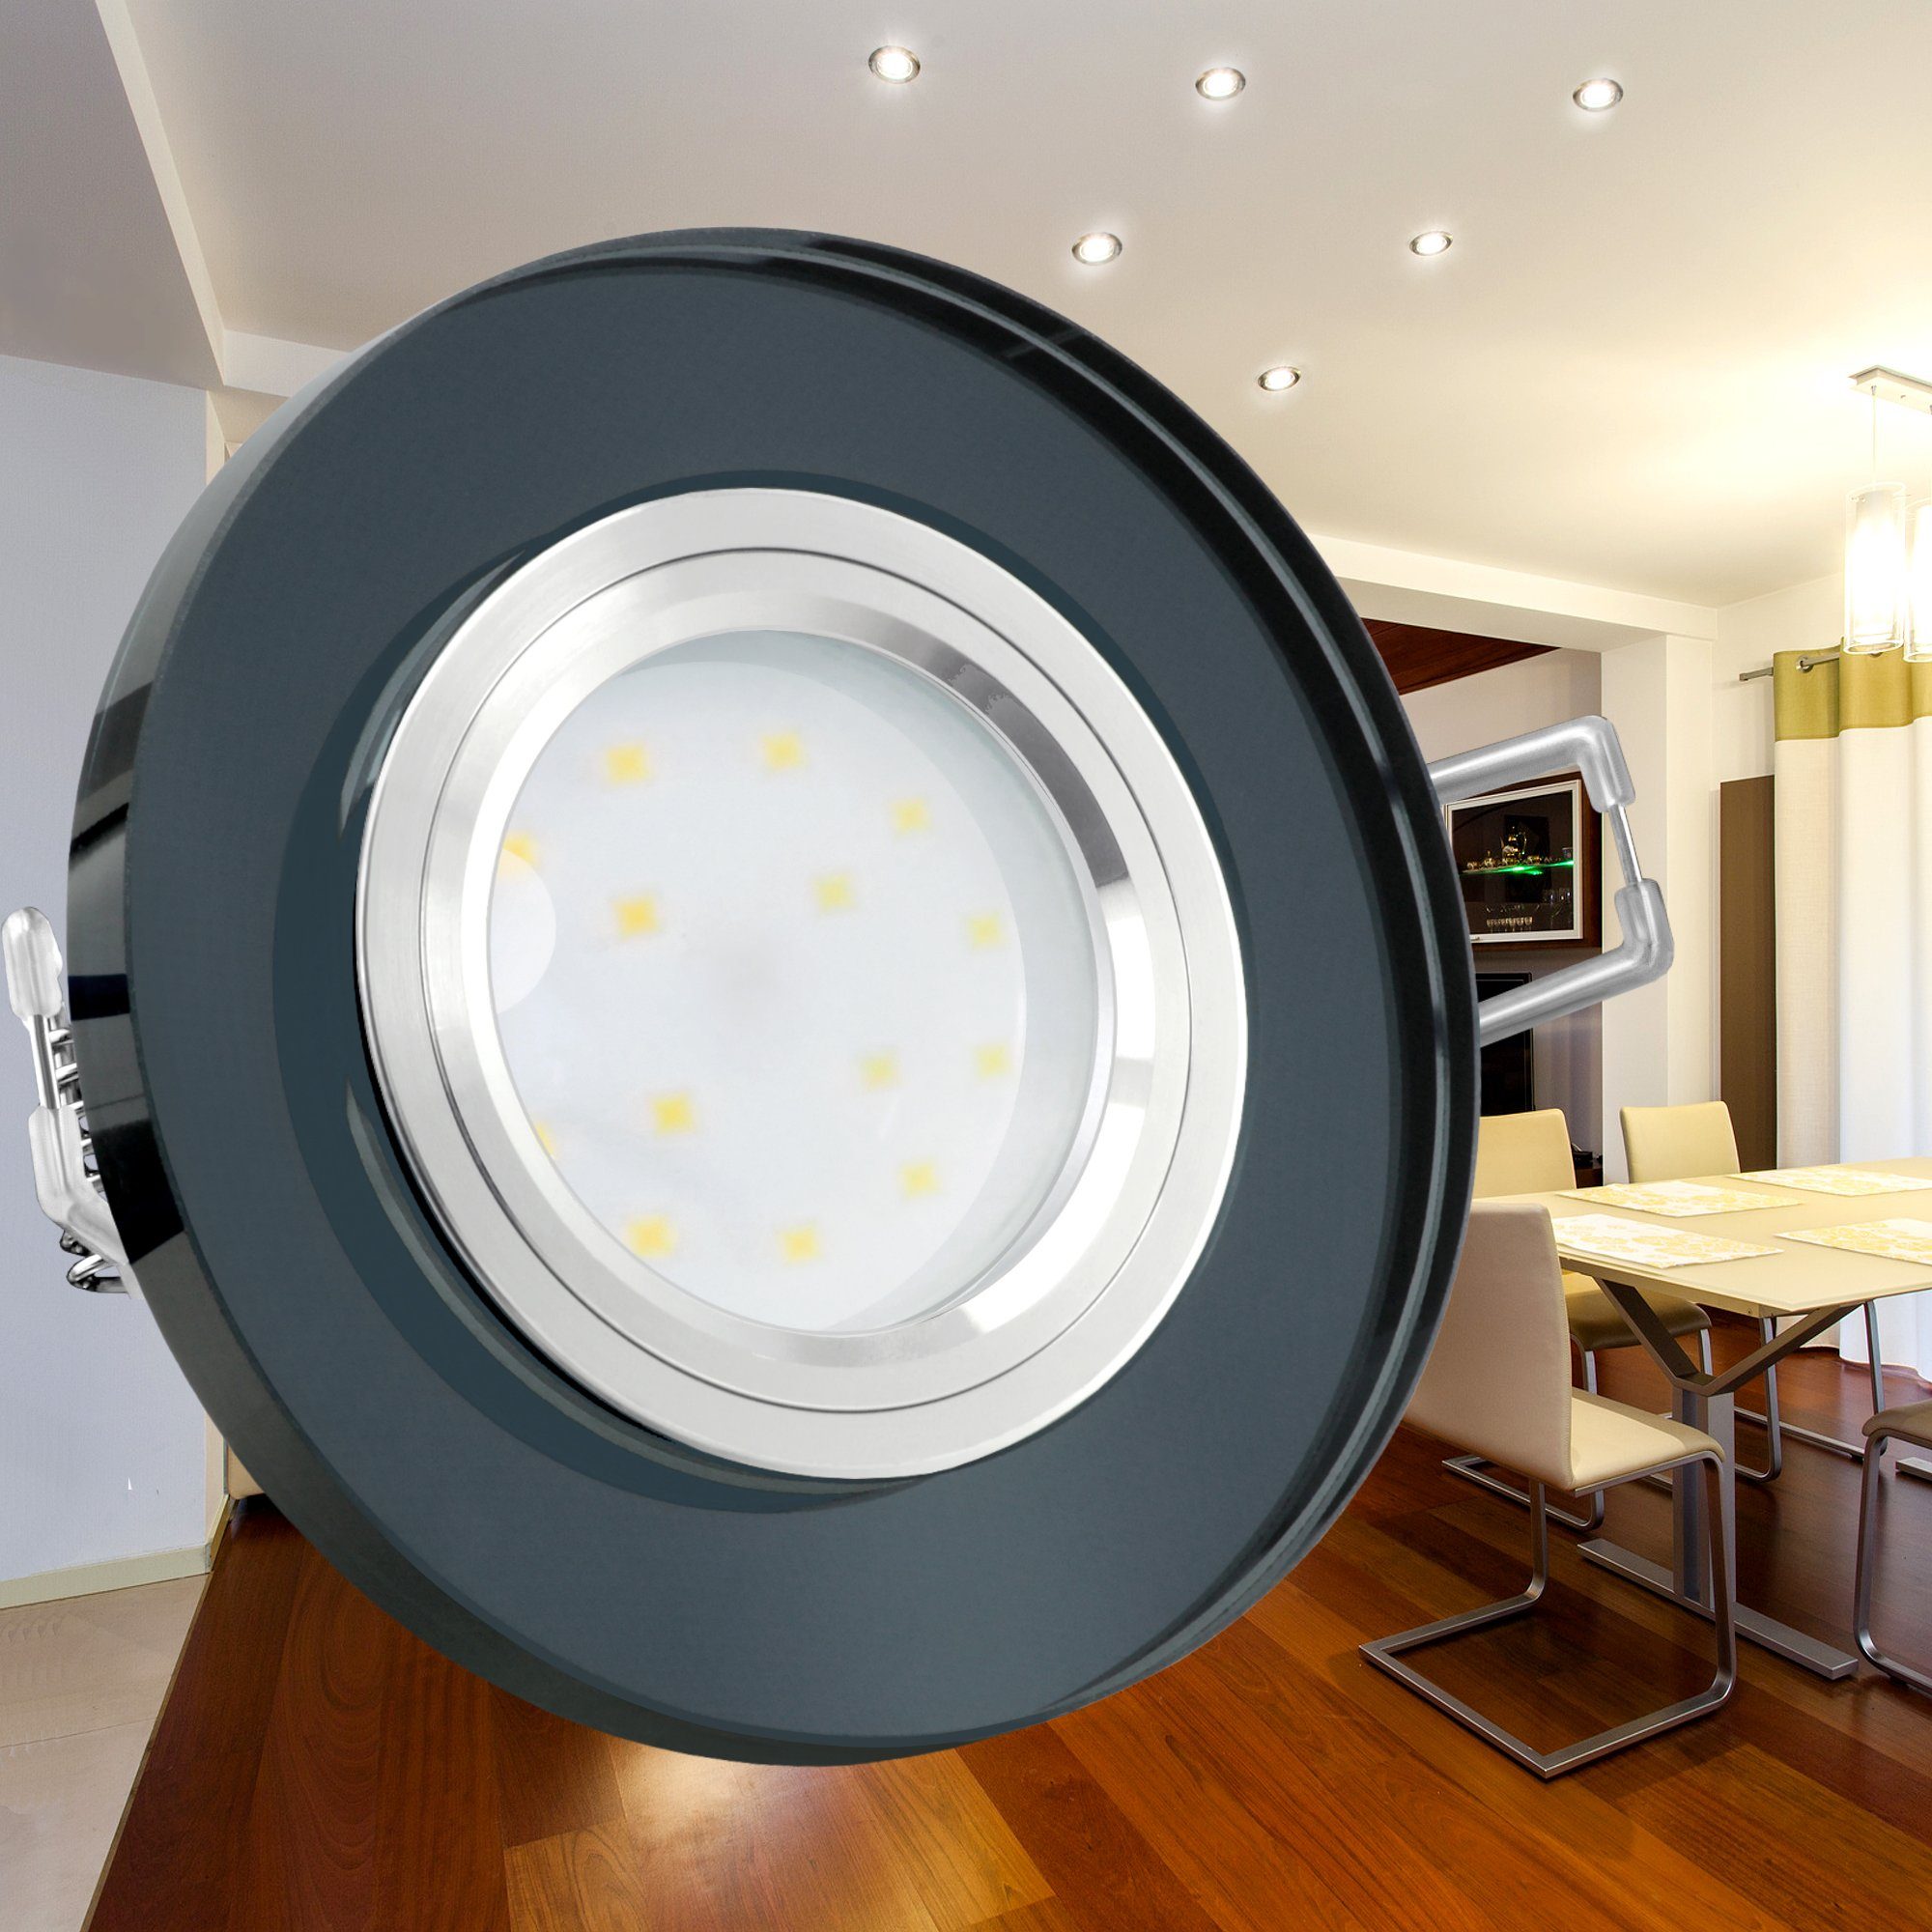 SSC-LUXon LED rund, Neutralweiß fourSTEP LED-Einbaustrahler Glas flach, LED, schwarz spiegelnd, Einbaustrahler